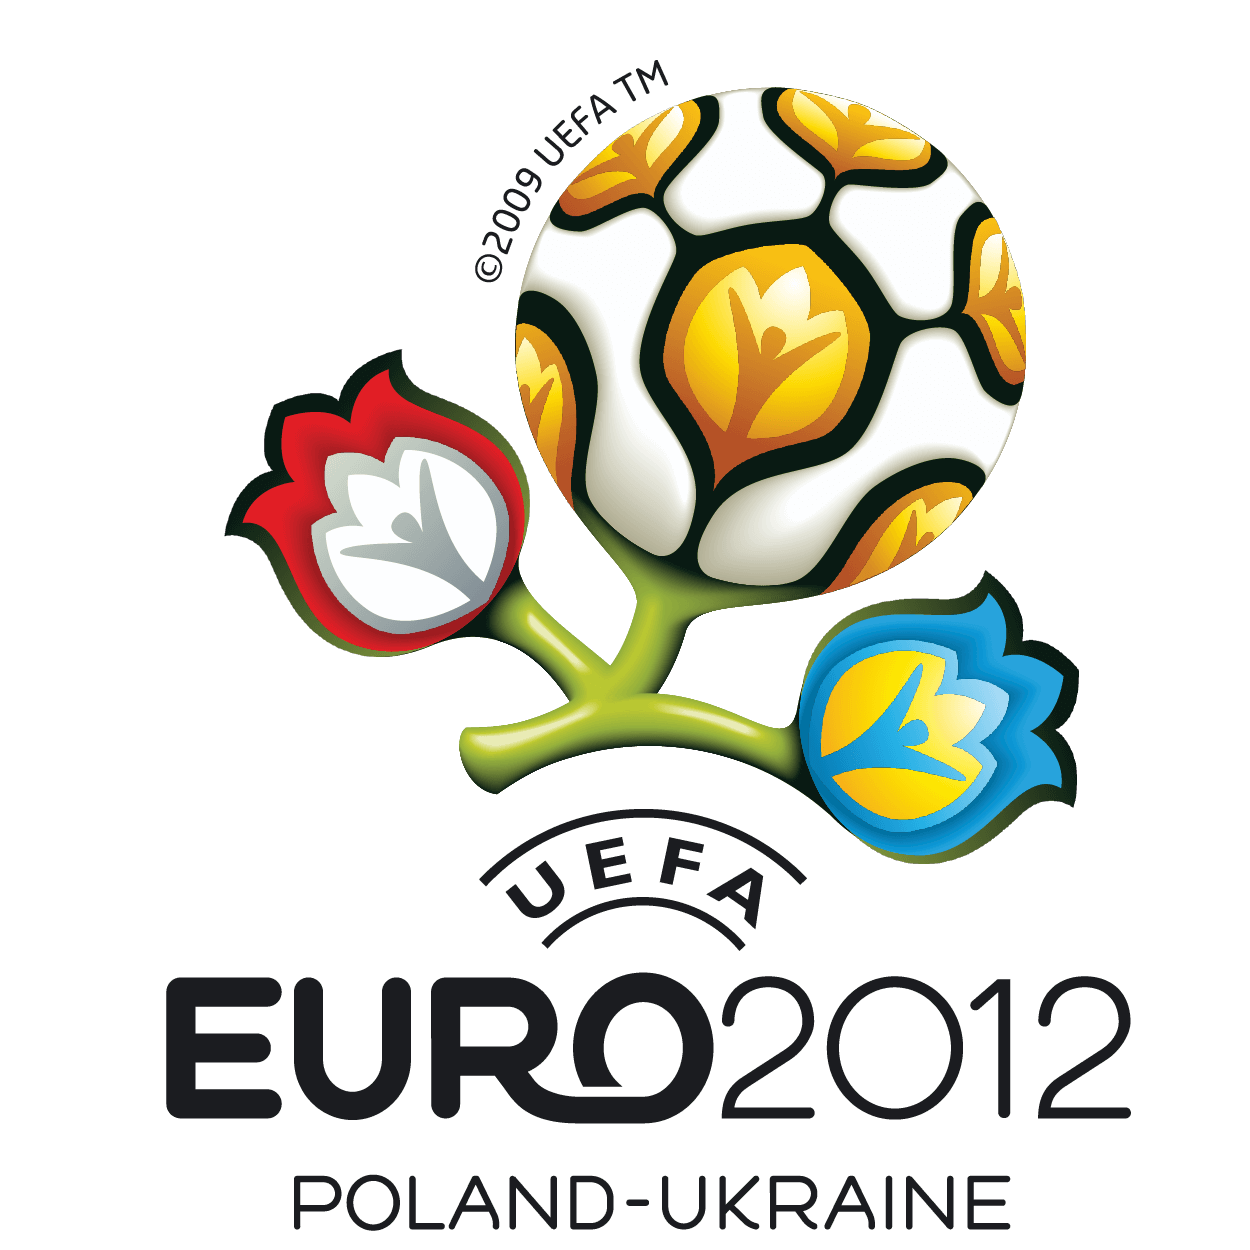 Poland Ukraine UEFA EURO 2012 logo png